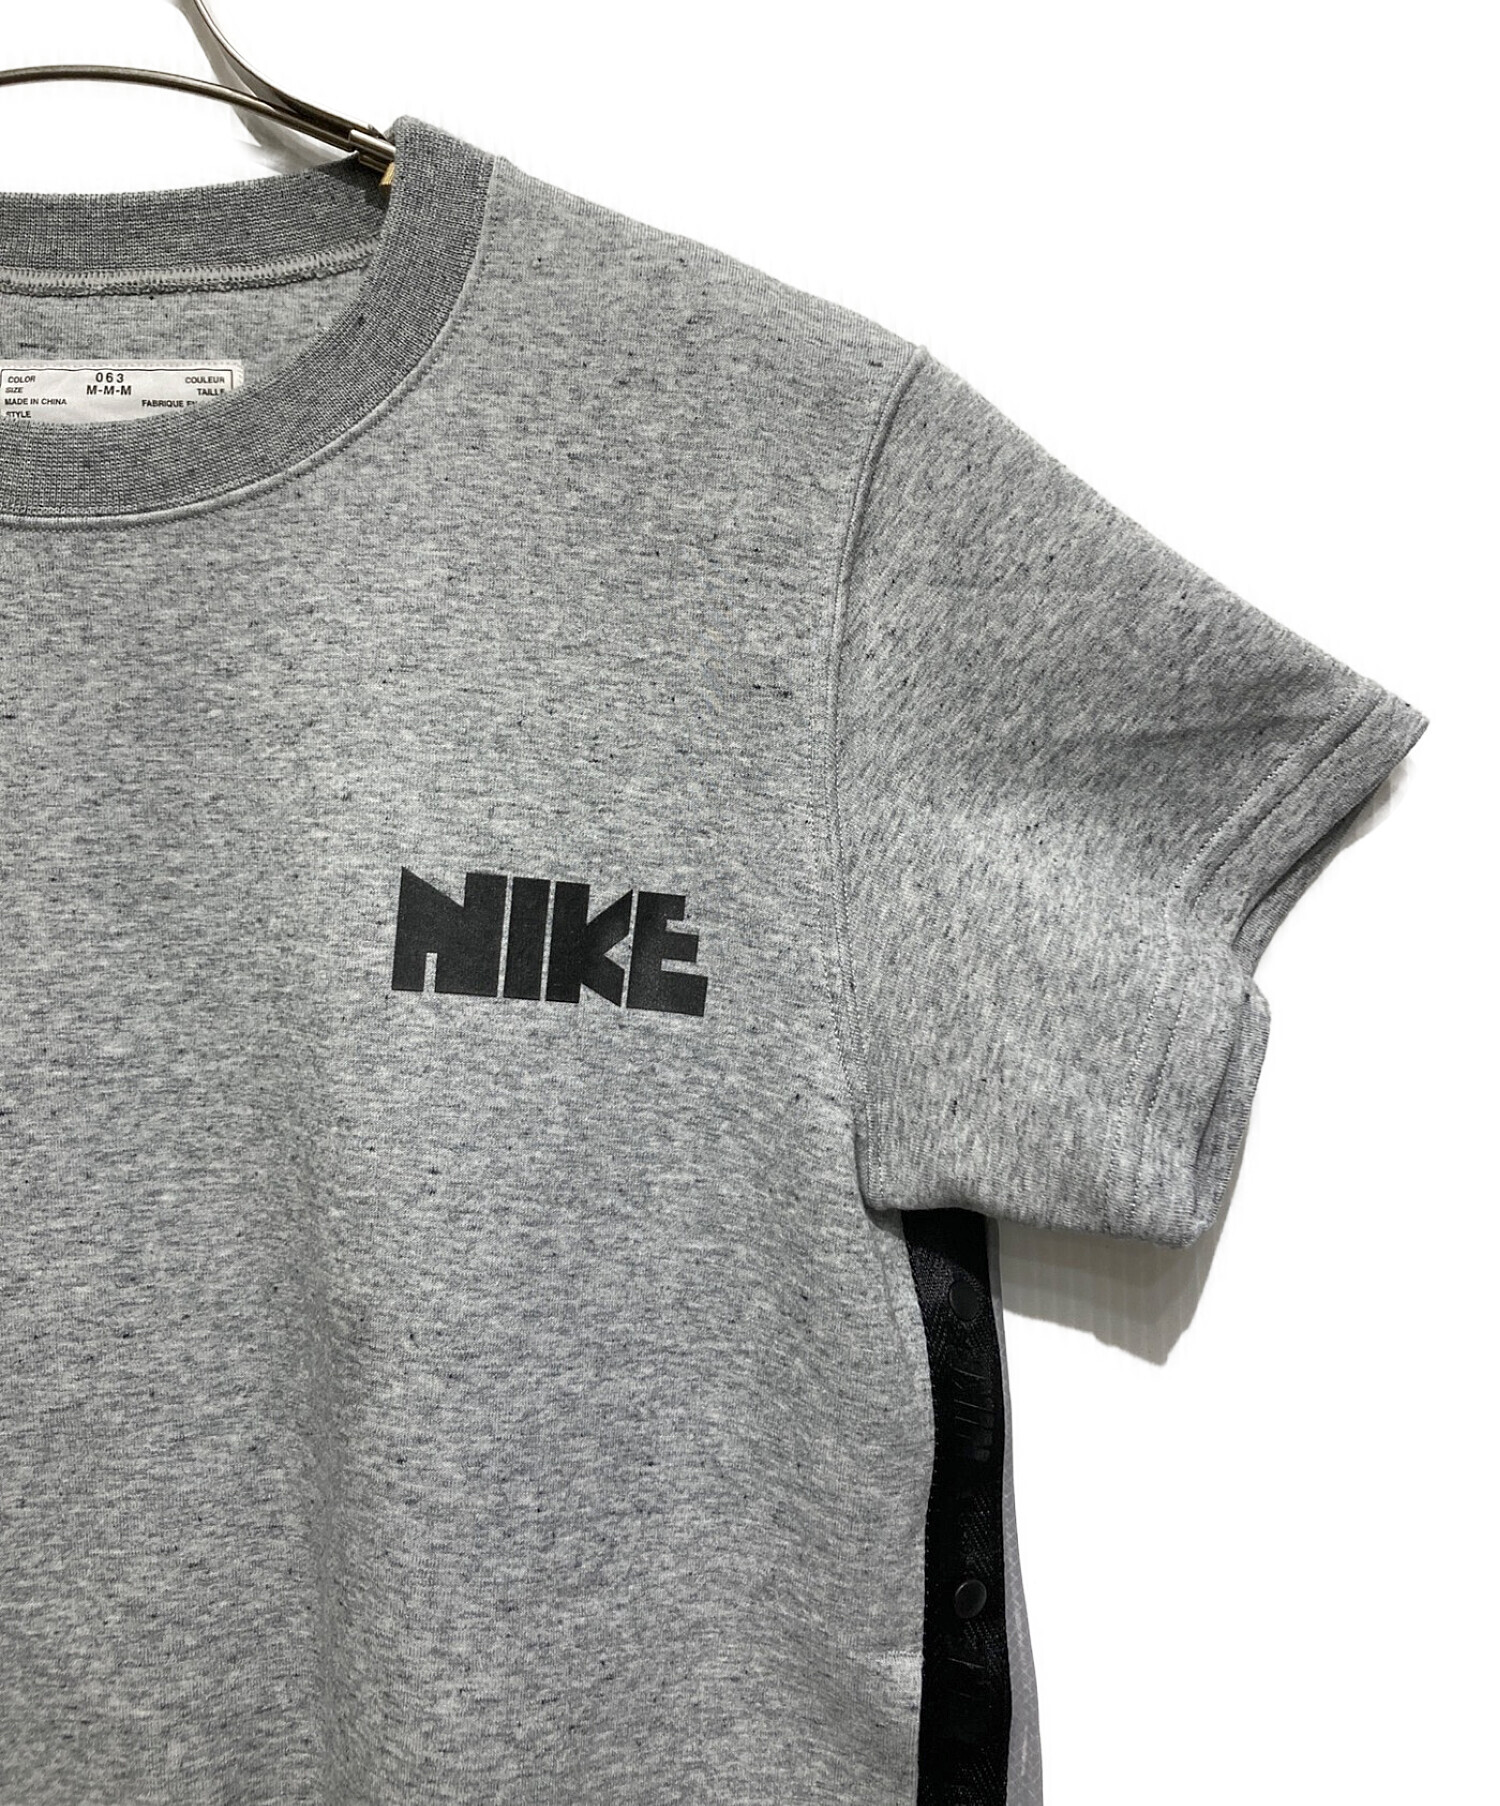 NIKE (ナイキ) sacai (サカイ) バックプリーツTシャツ グレー サイズ:SIZE M